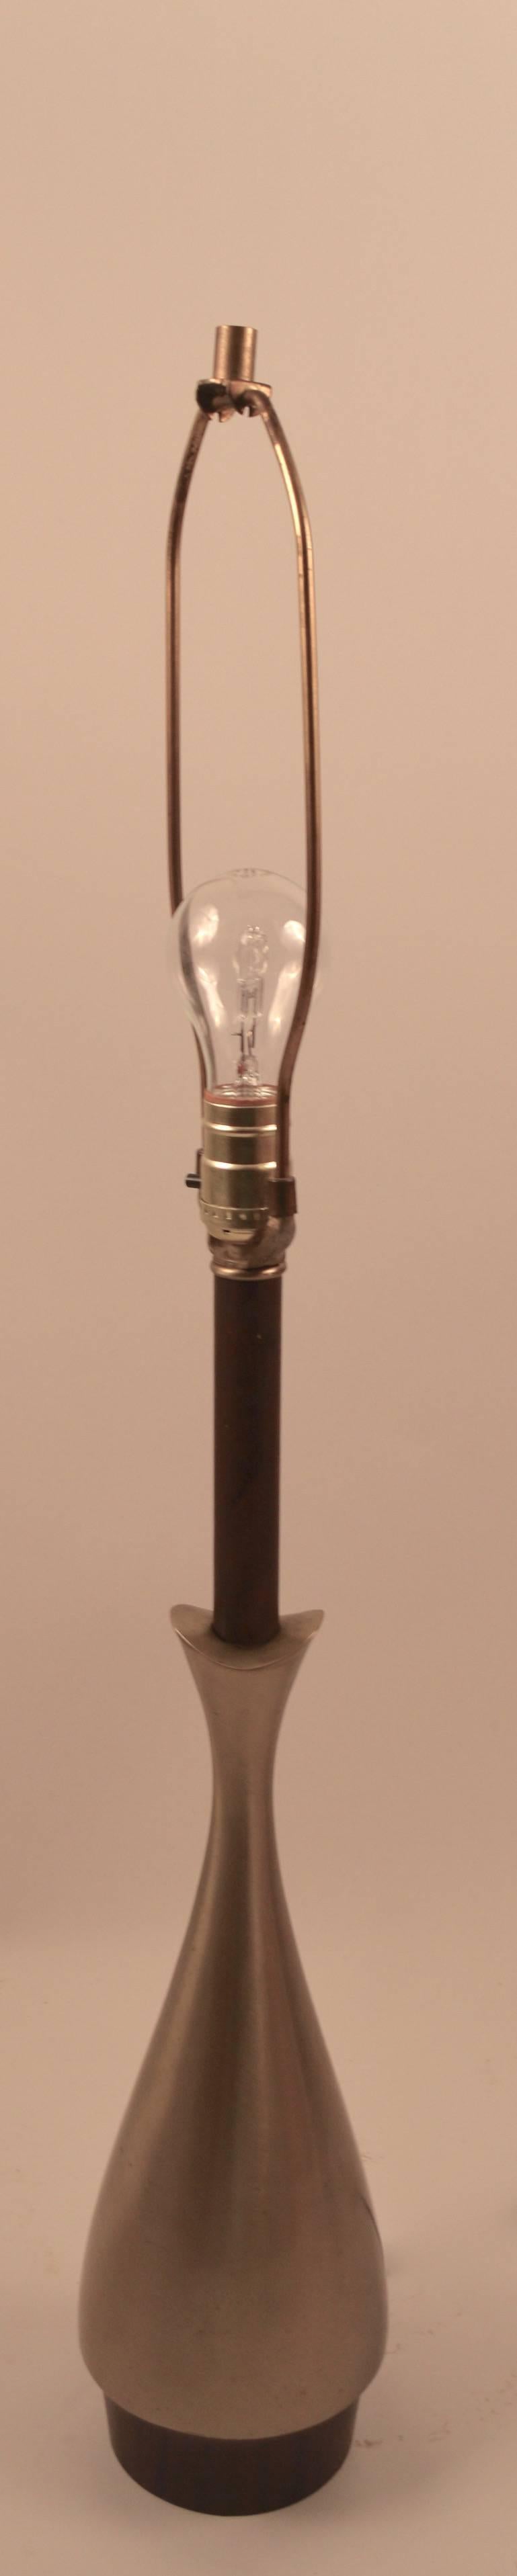 Original, sauber funktionierende Laurel Tischlampe. Gebürstetes Metall, Sockel aus Holzimitat und vertikaler Standard. Schirm nicht enthalten. 24